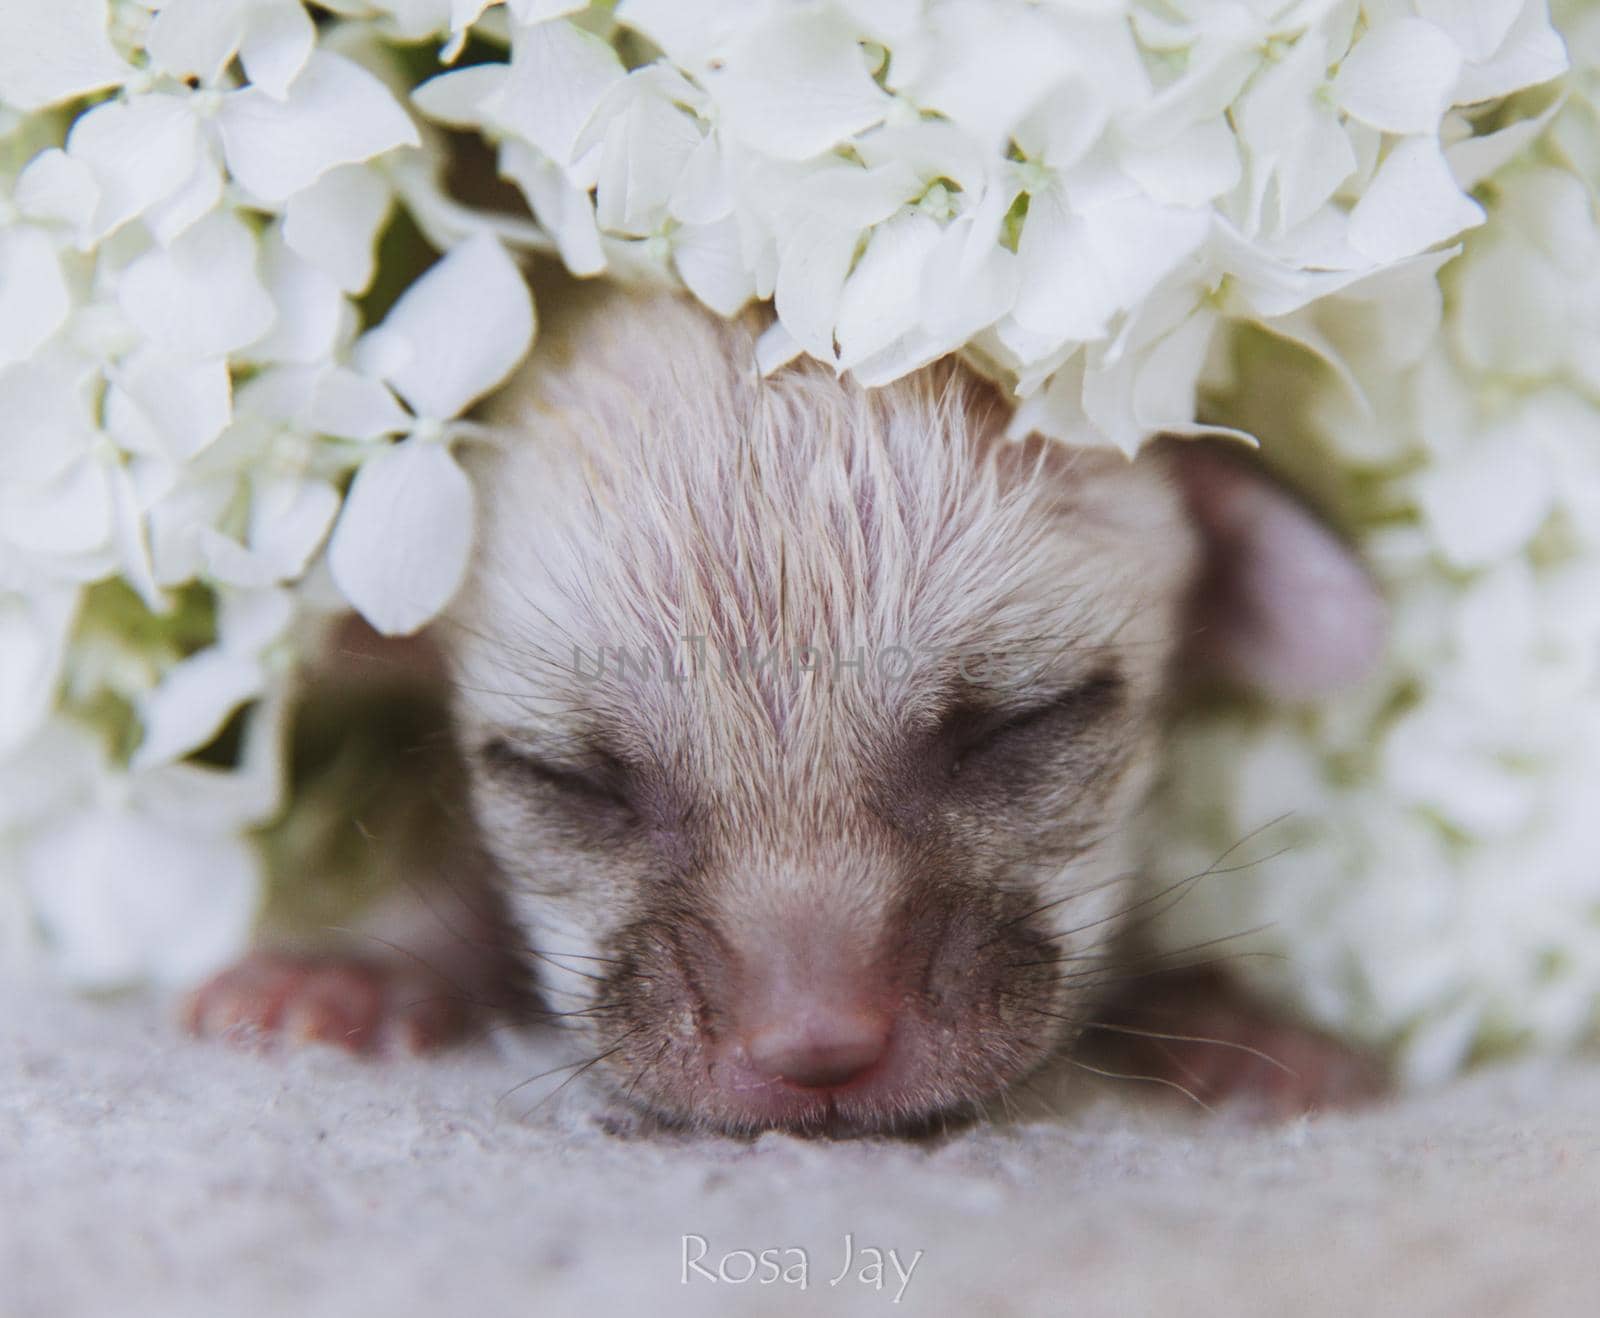 Cute Newborn fennec fox cub 7 days old in white flowers